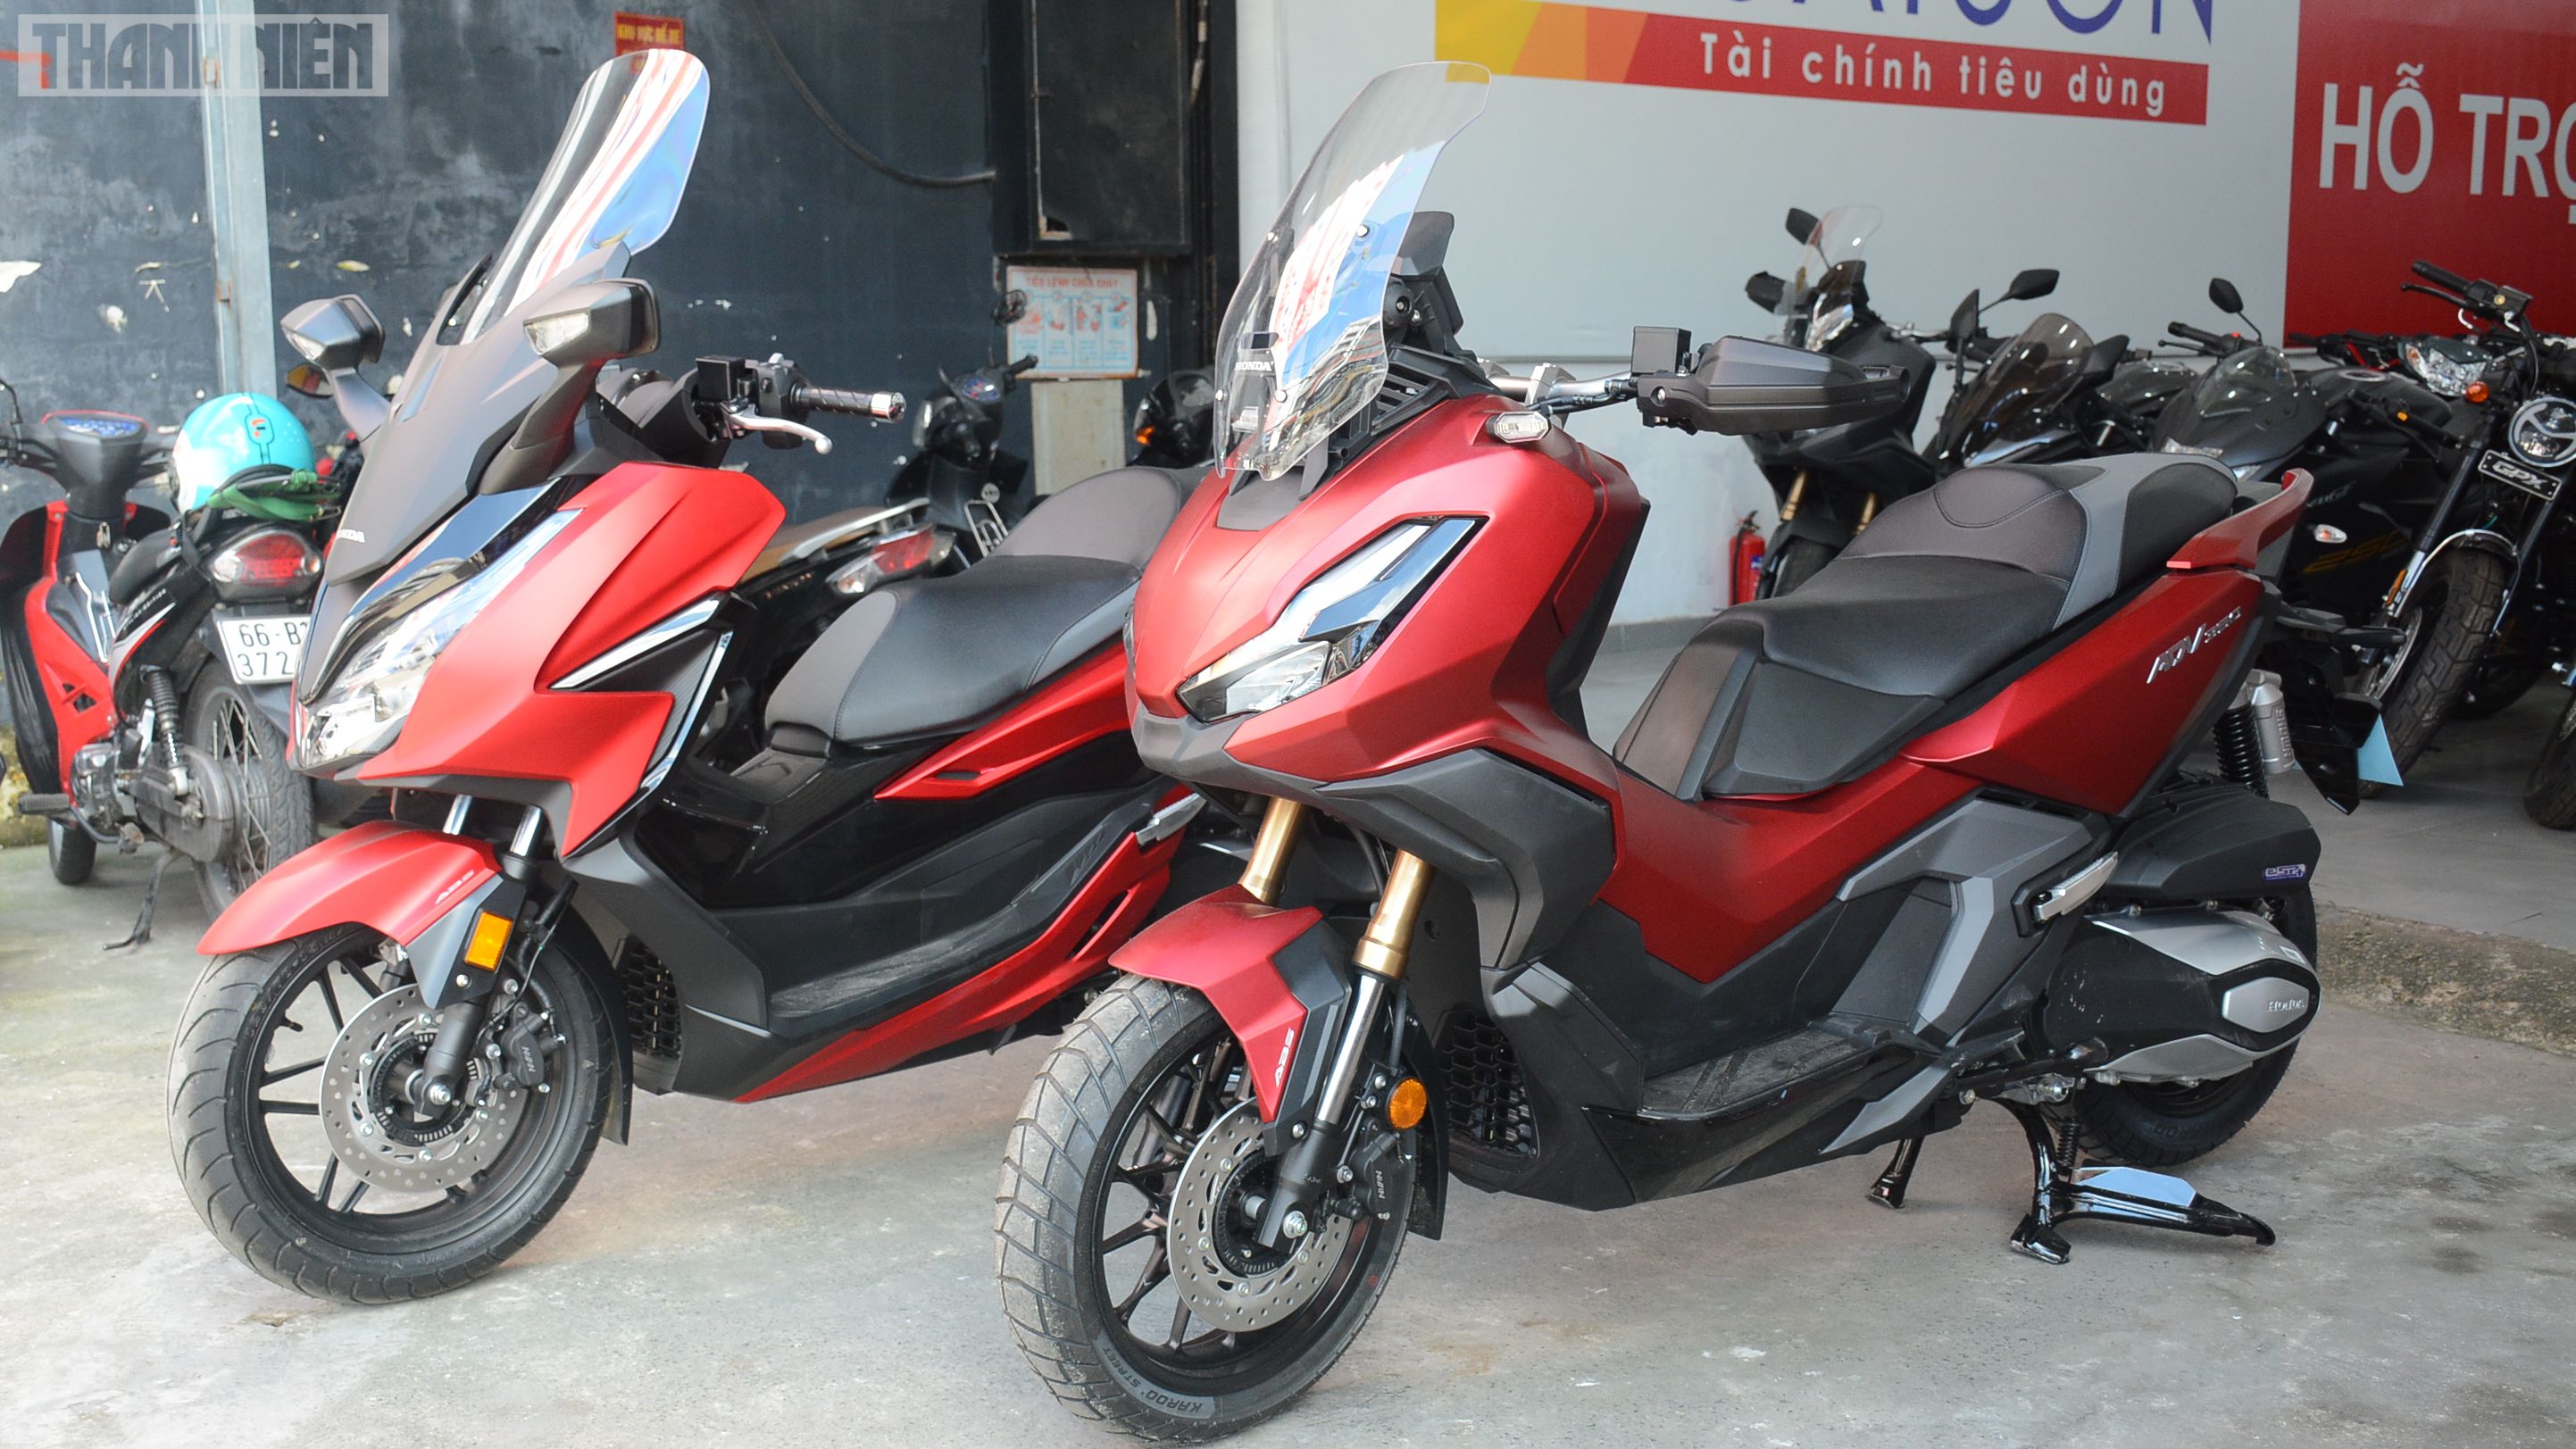 Honda CB350 RS 2022 đã có giá bán tại Việt Nam đánh giá xe về ngoại hình   YouTube